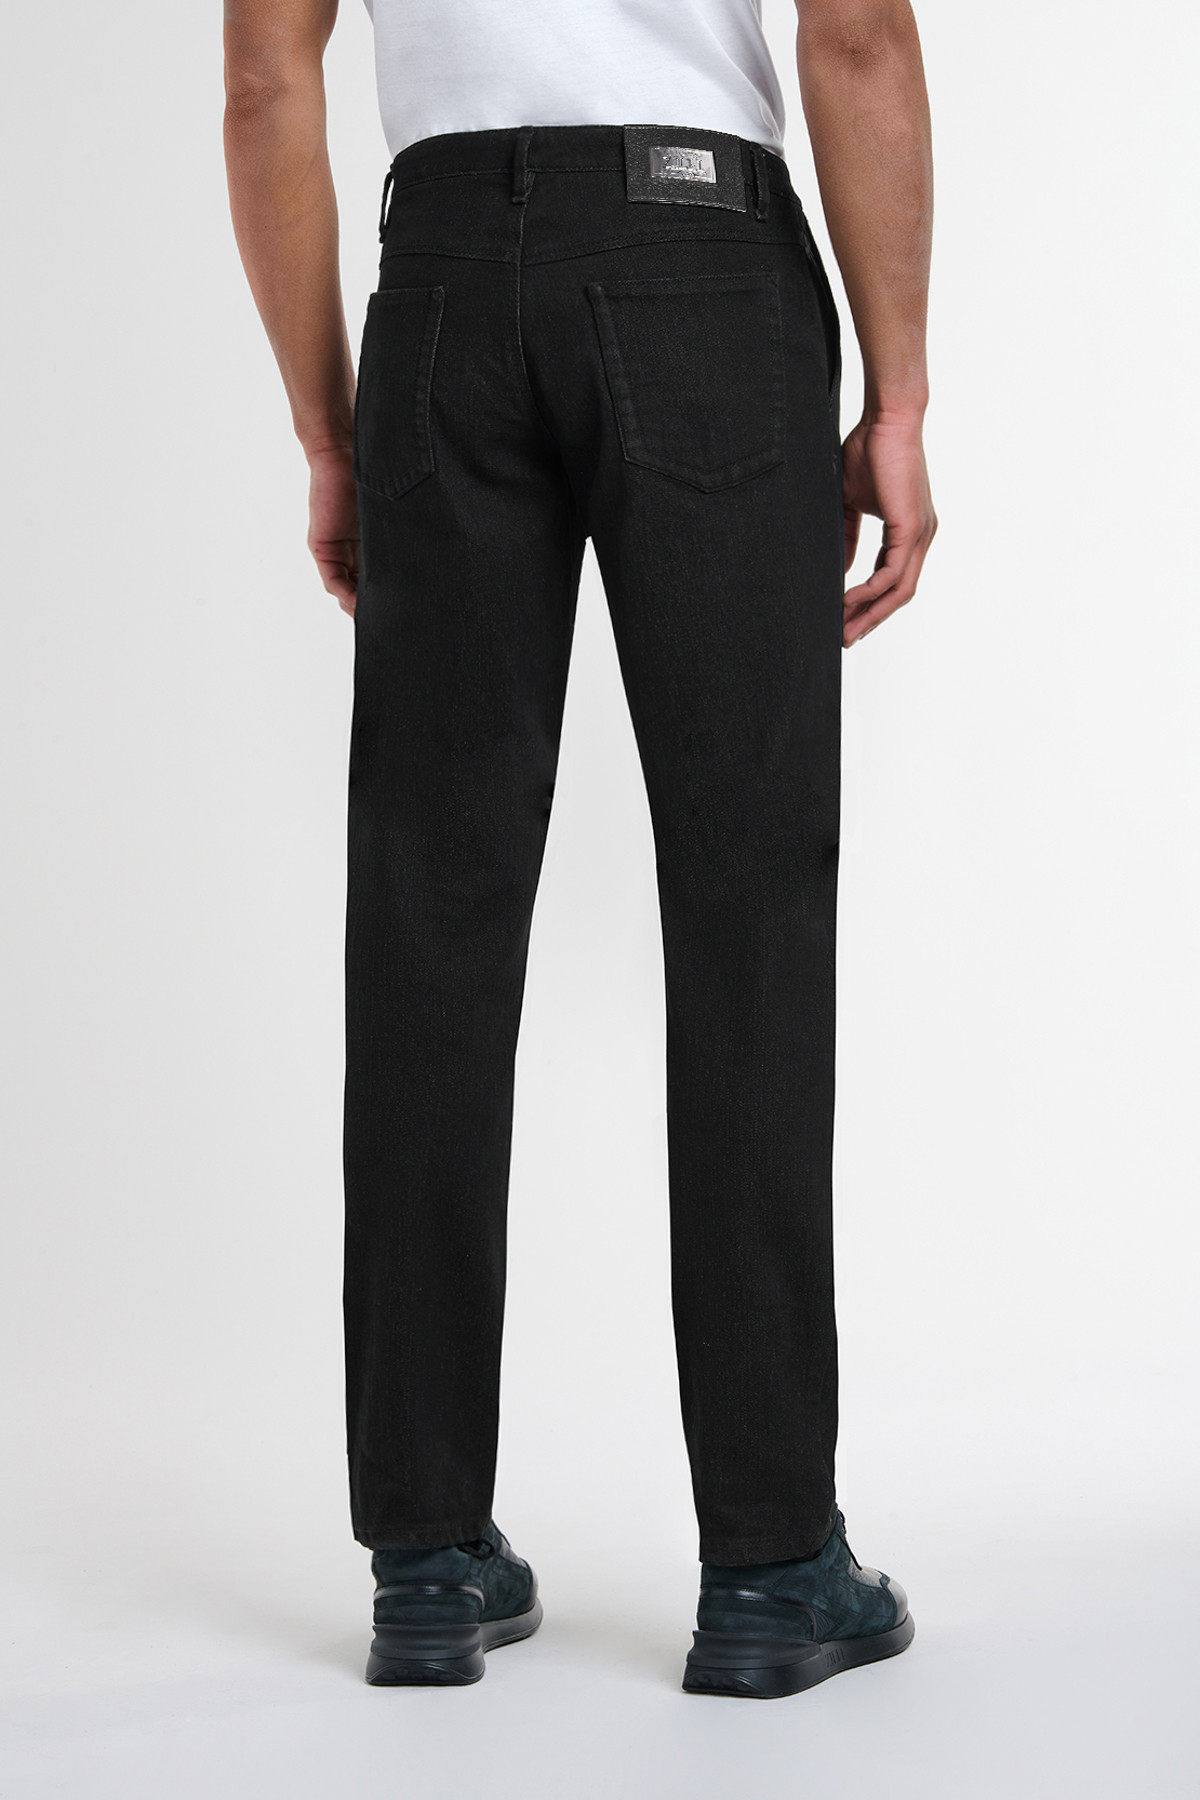 Black cotton trousers, slim fit